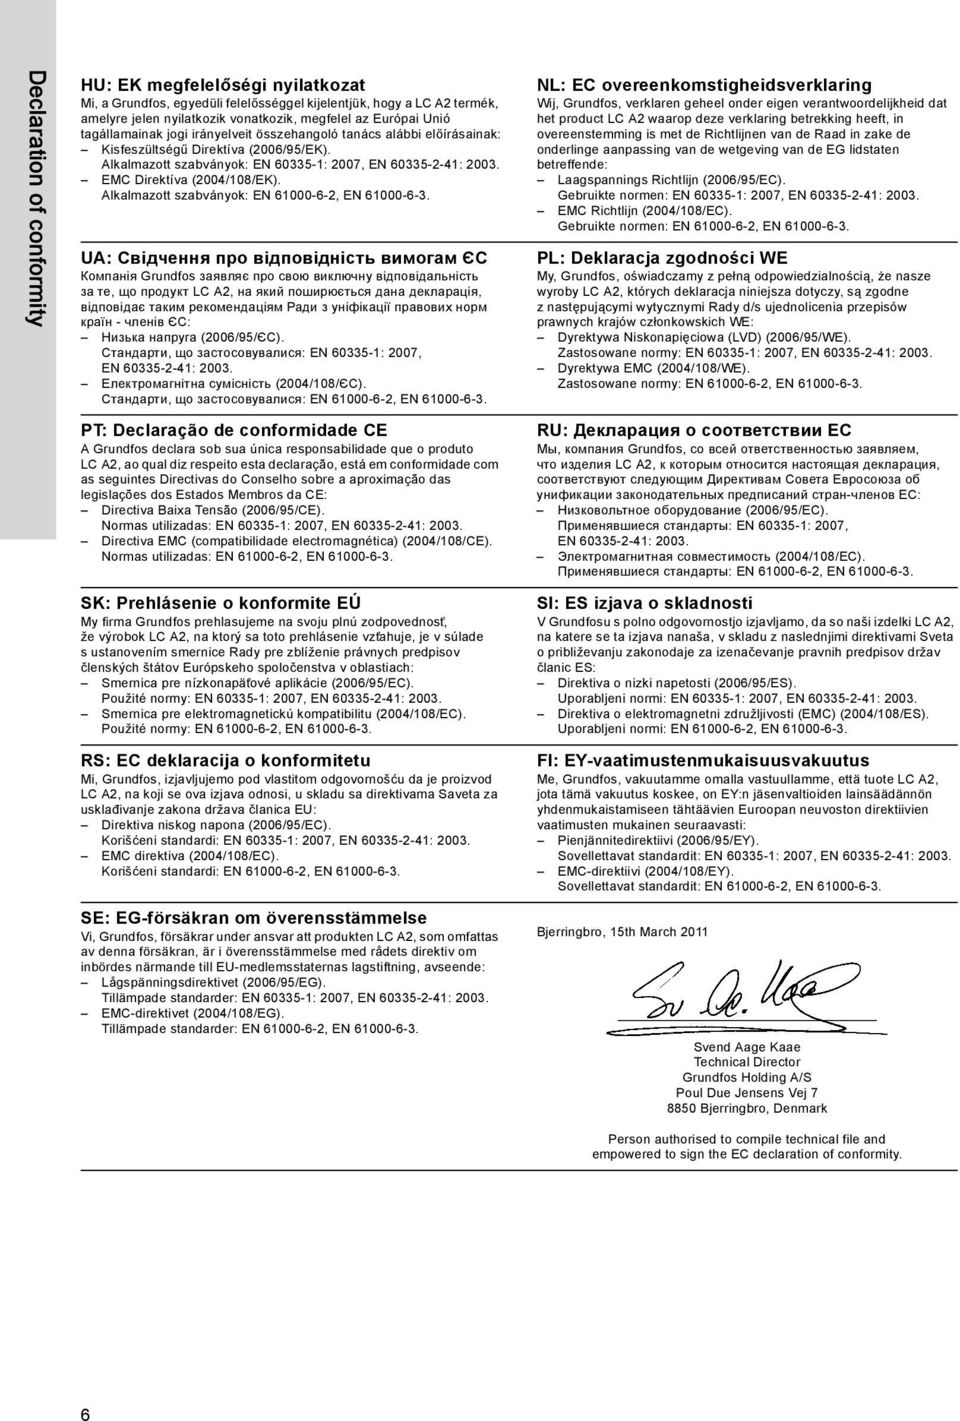 EMC Direktíva (2004/108/EK). Alkalmazott szabványok: EN 61000-6-2, EN 61000-6-3.